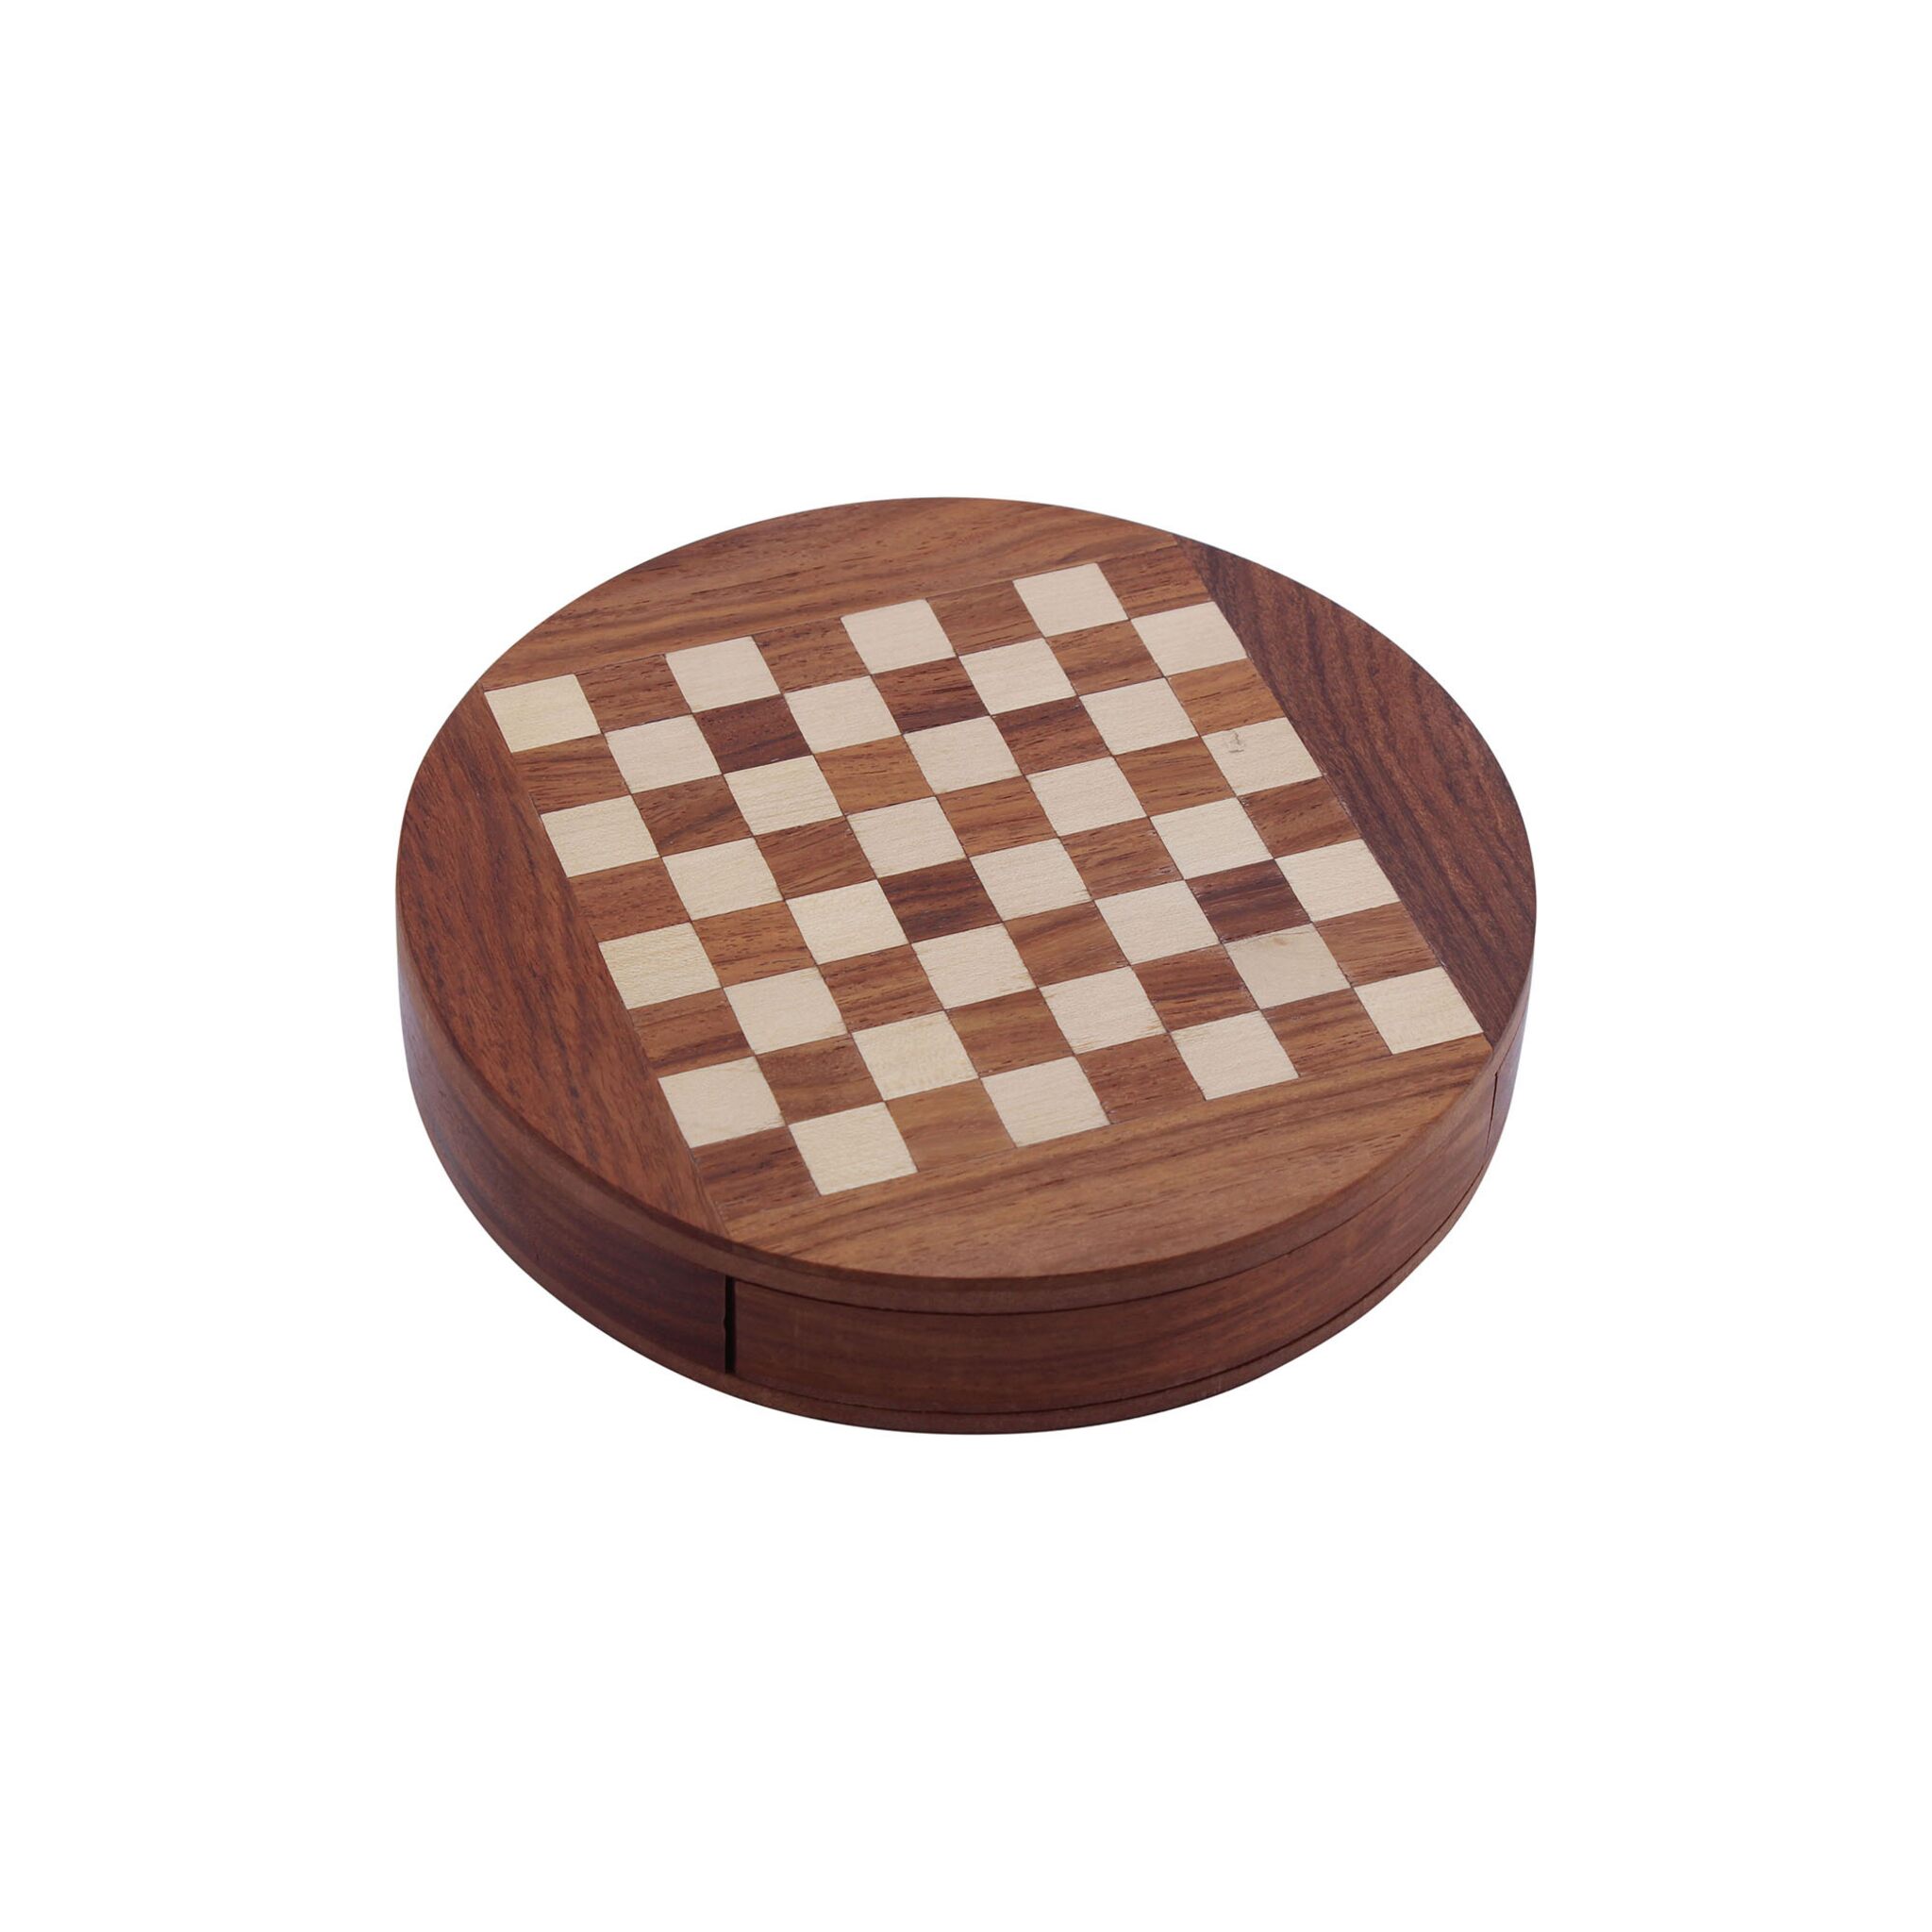 Schachspiel aus Holz magnetisch